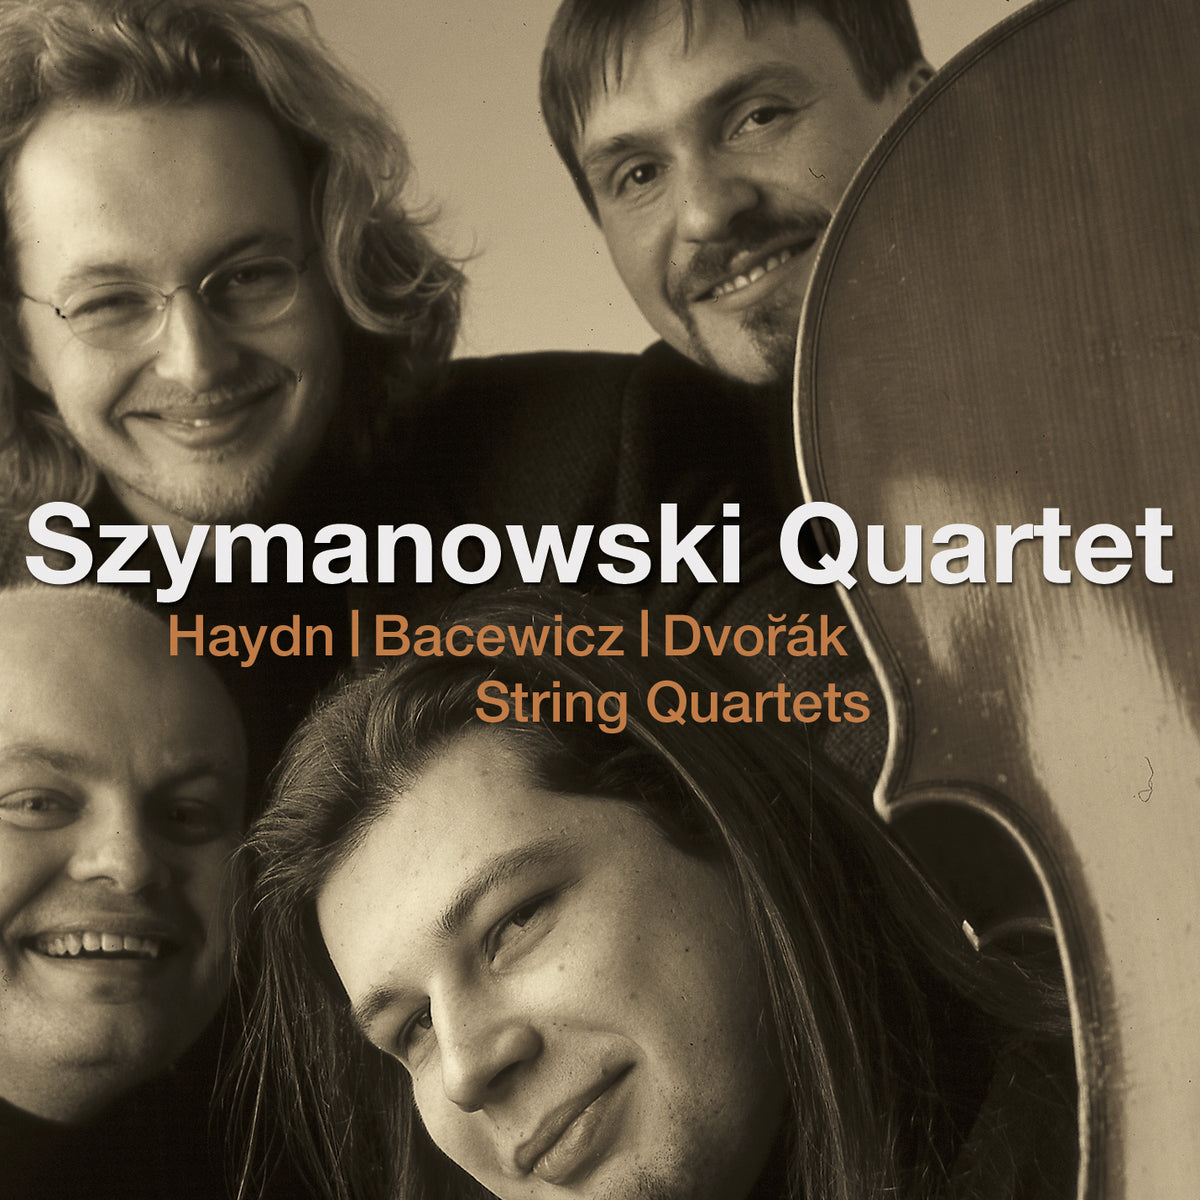 Szymanowski Quartet: Haydn, Bacewicz, Dvorak: String Quartets